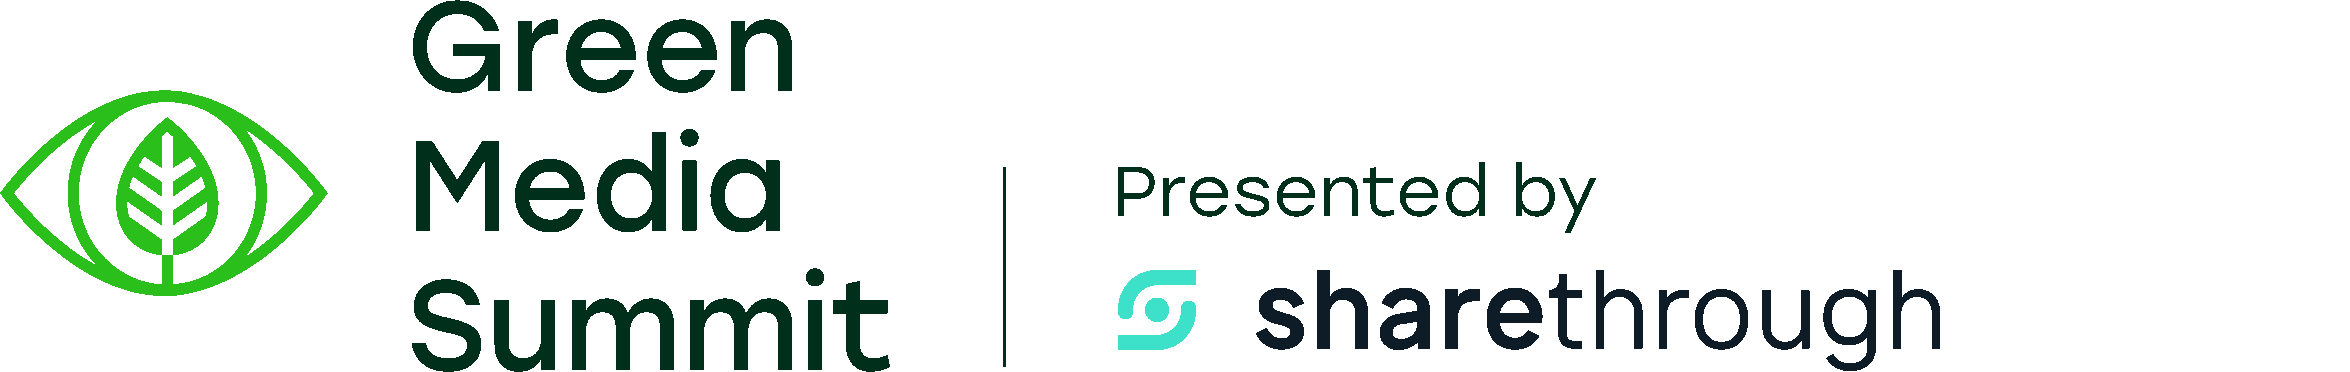 Green Media Summit logo